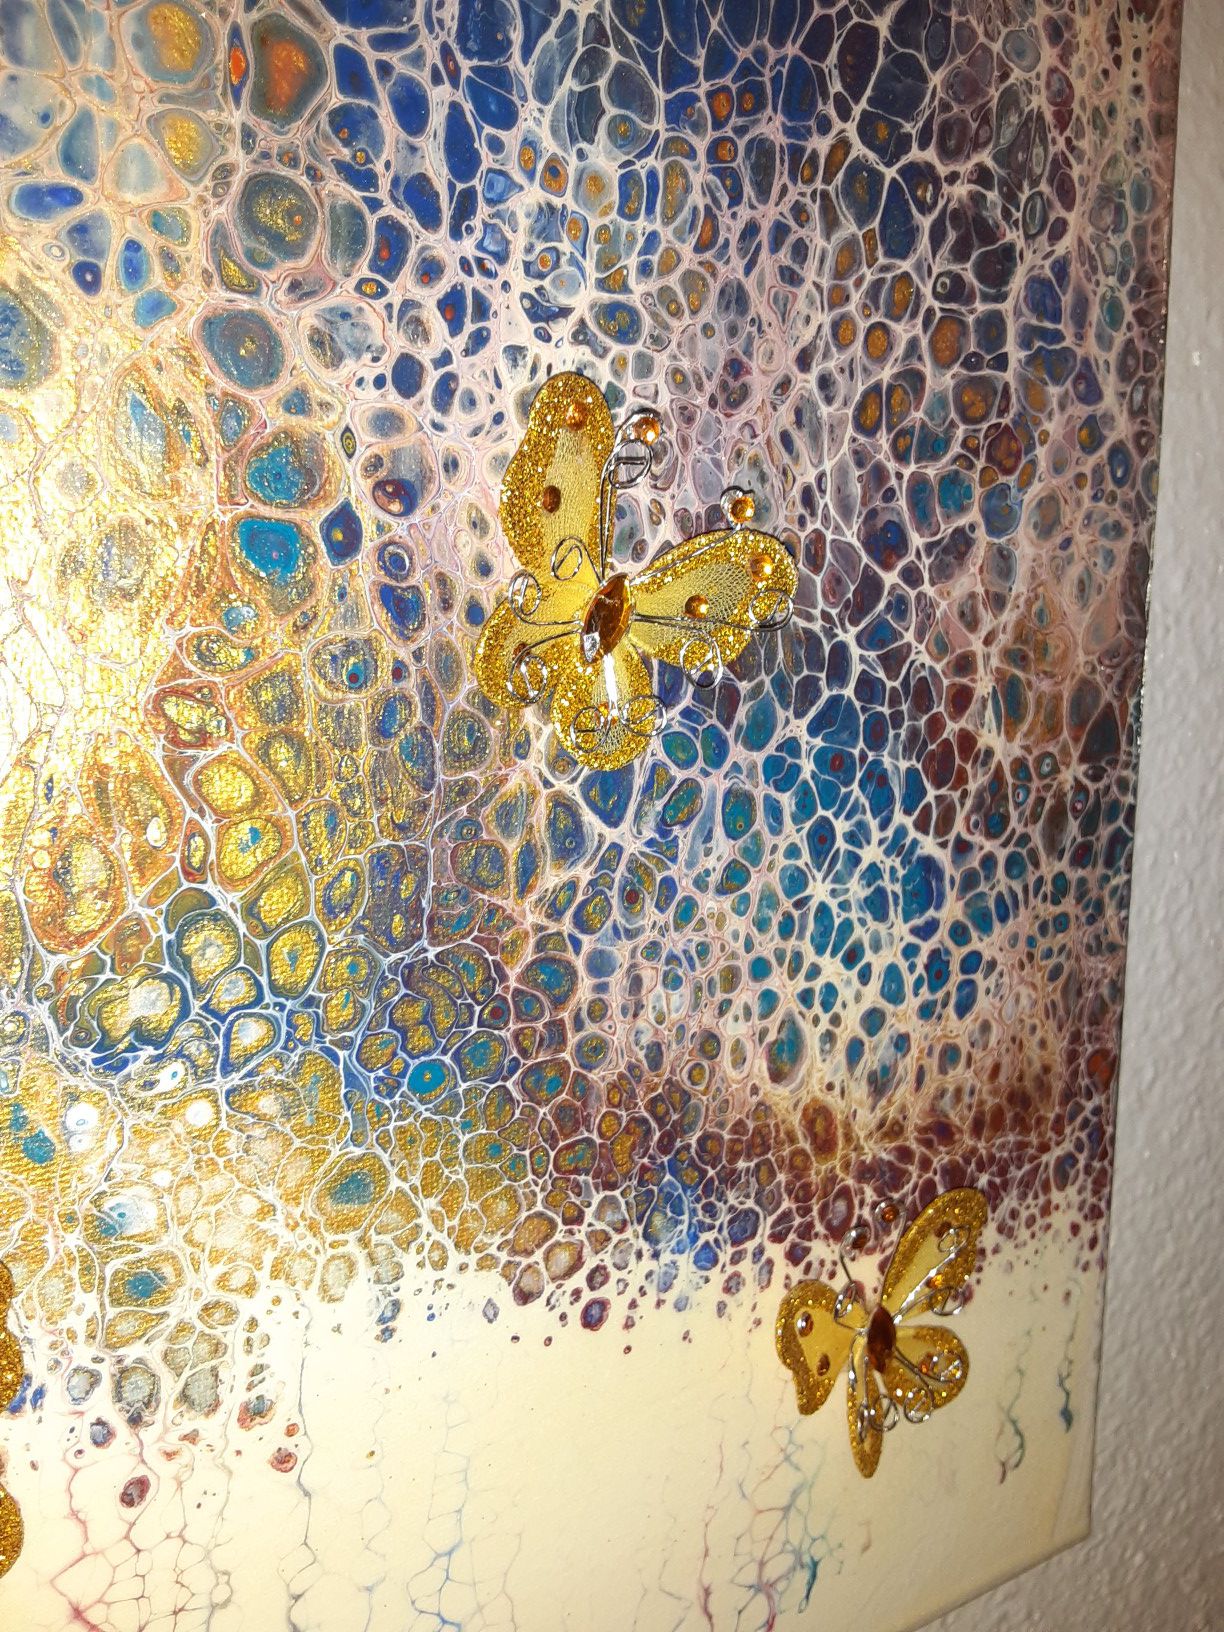 Original art by Stacey - abstract art - butterflies